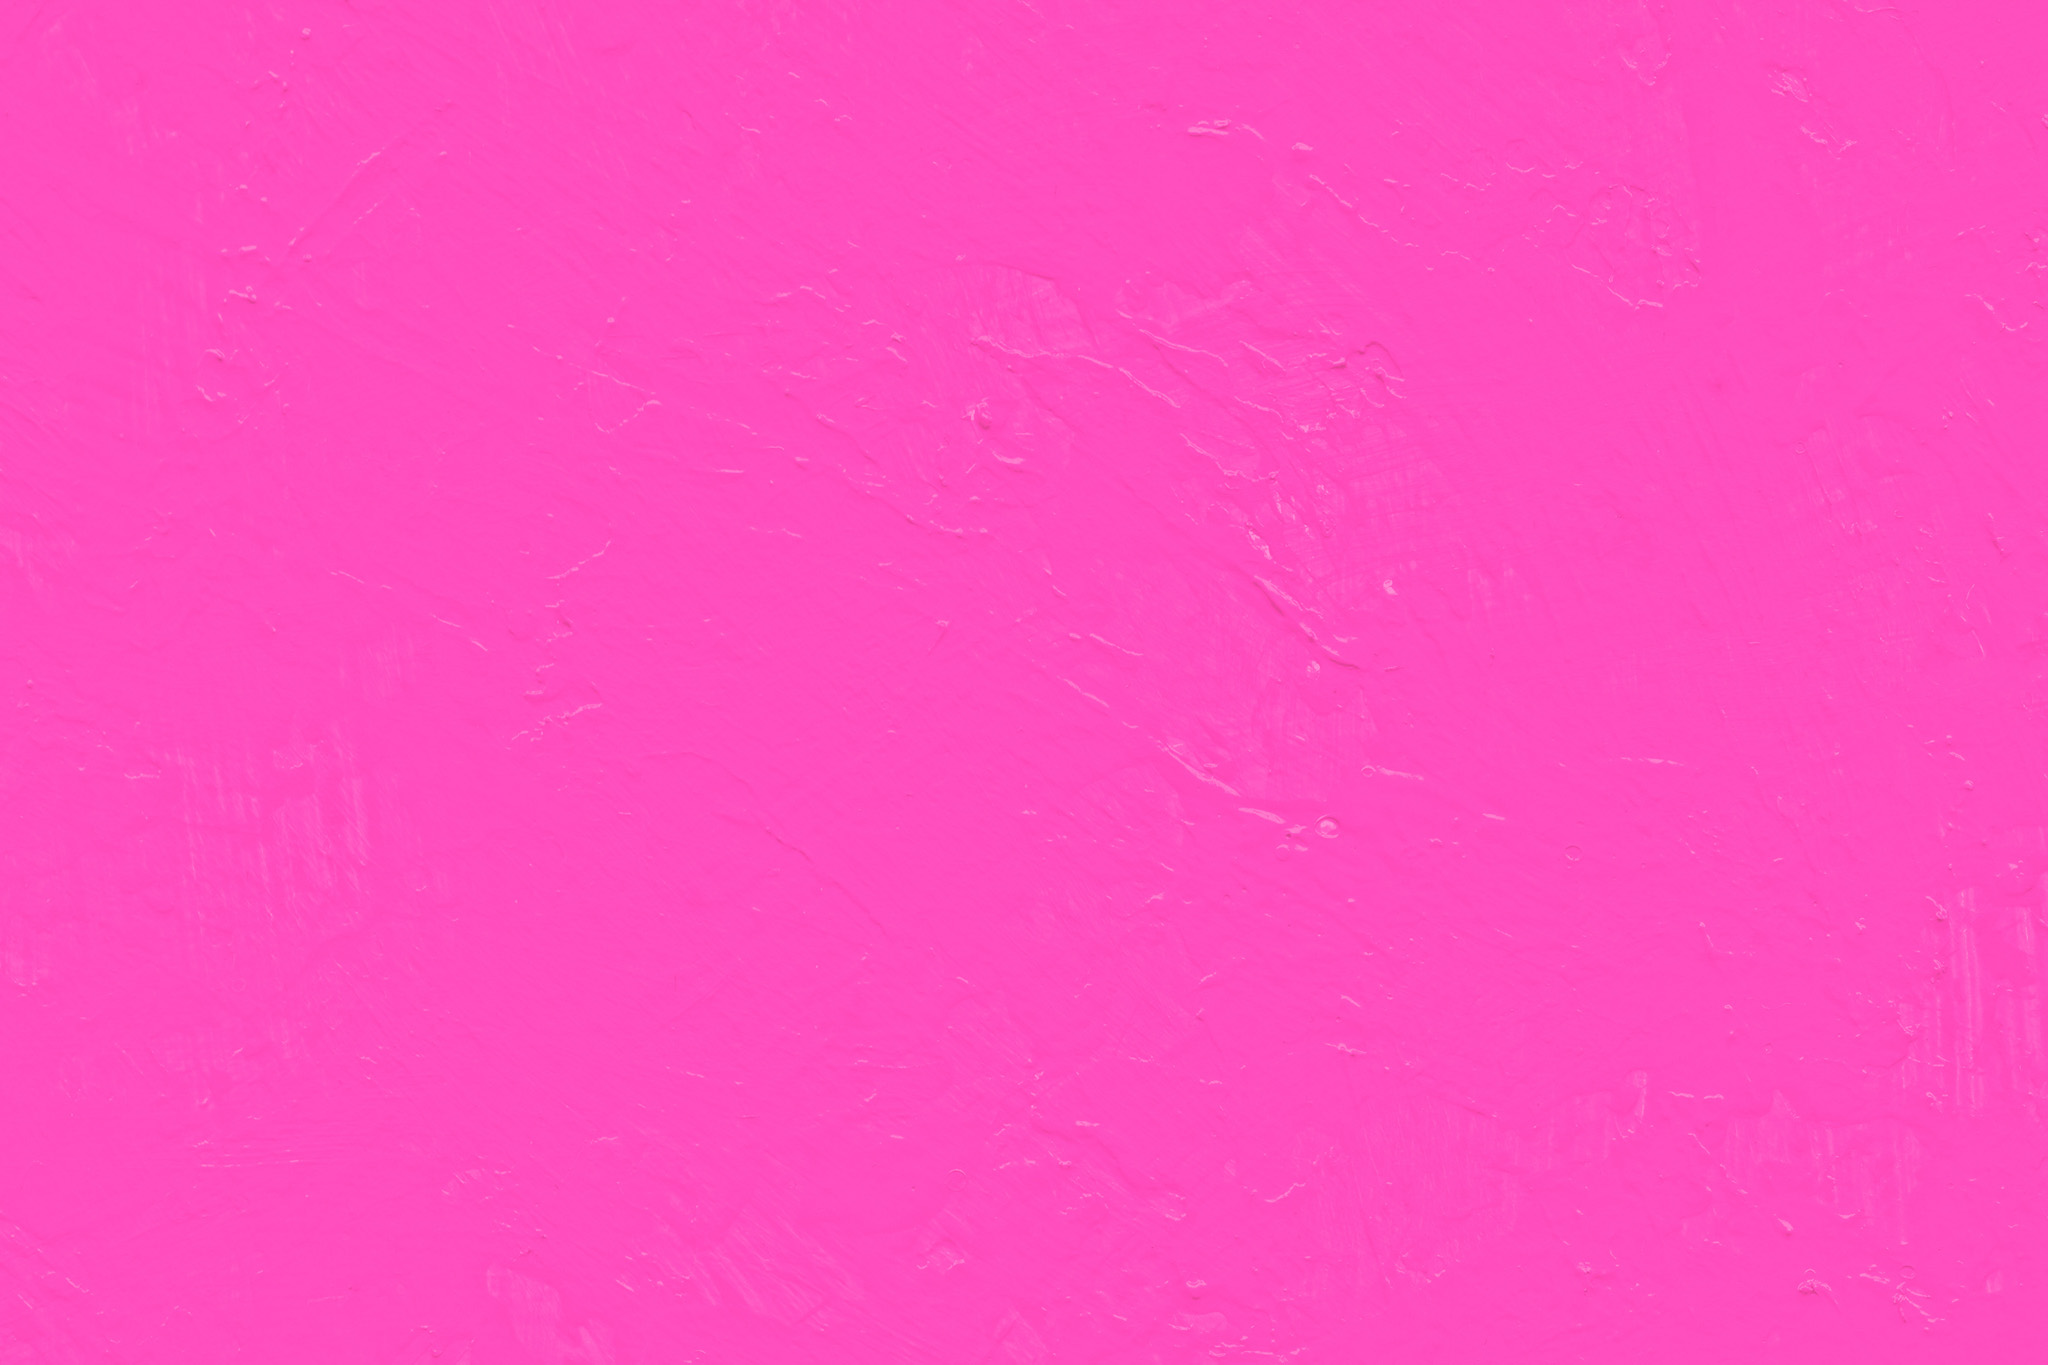 シンプルなピンク色の無地の背景 の画像素材を無料ダウンロード 1 フリー素材 Beiz Images